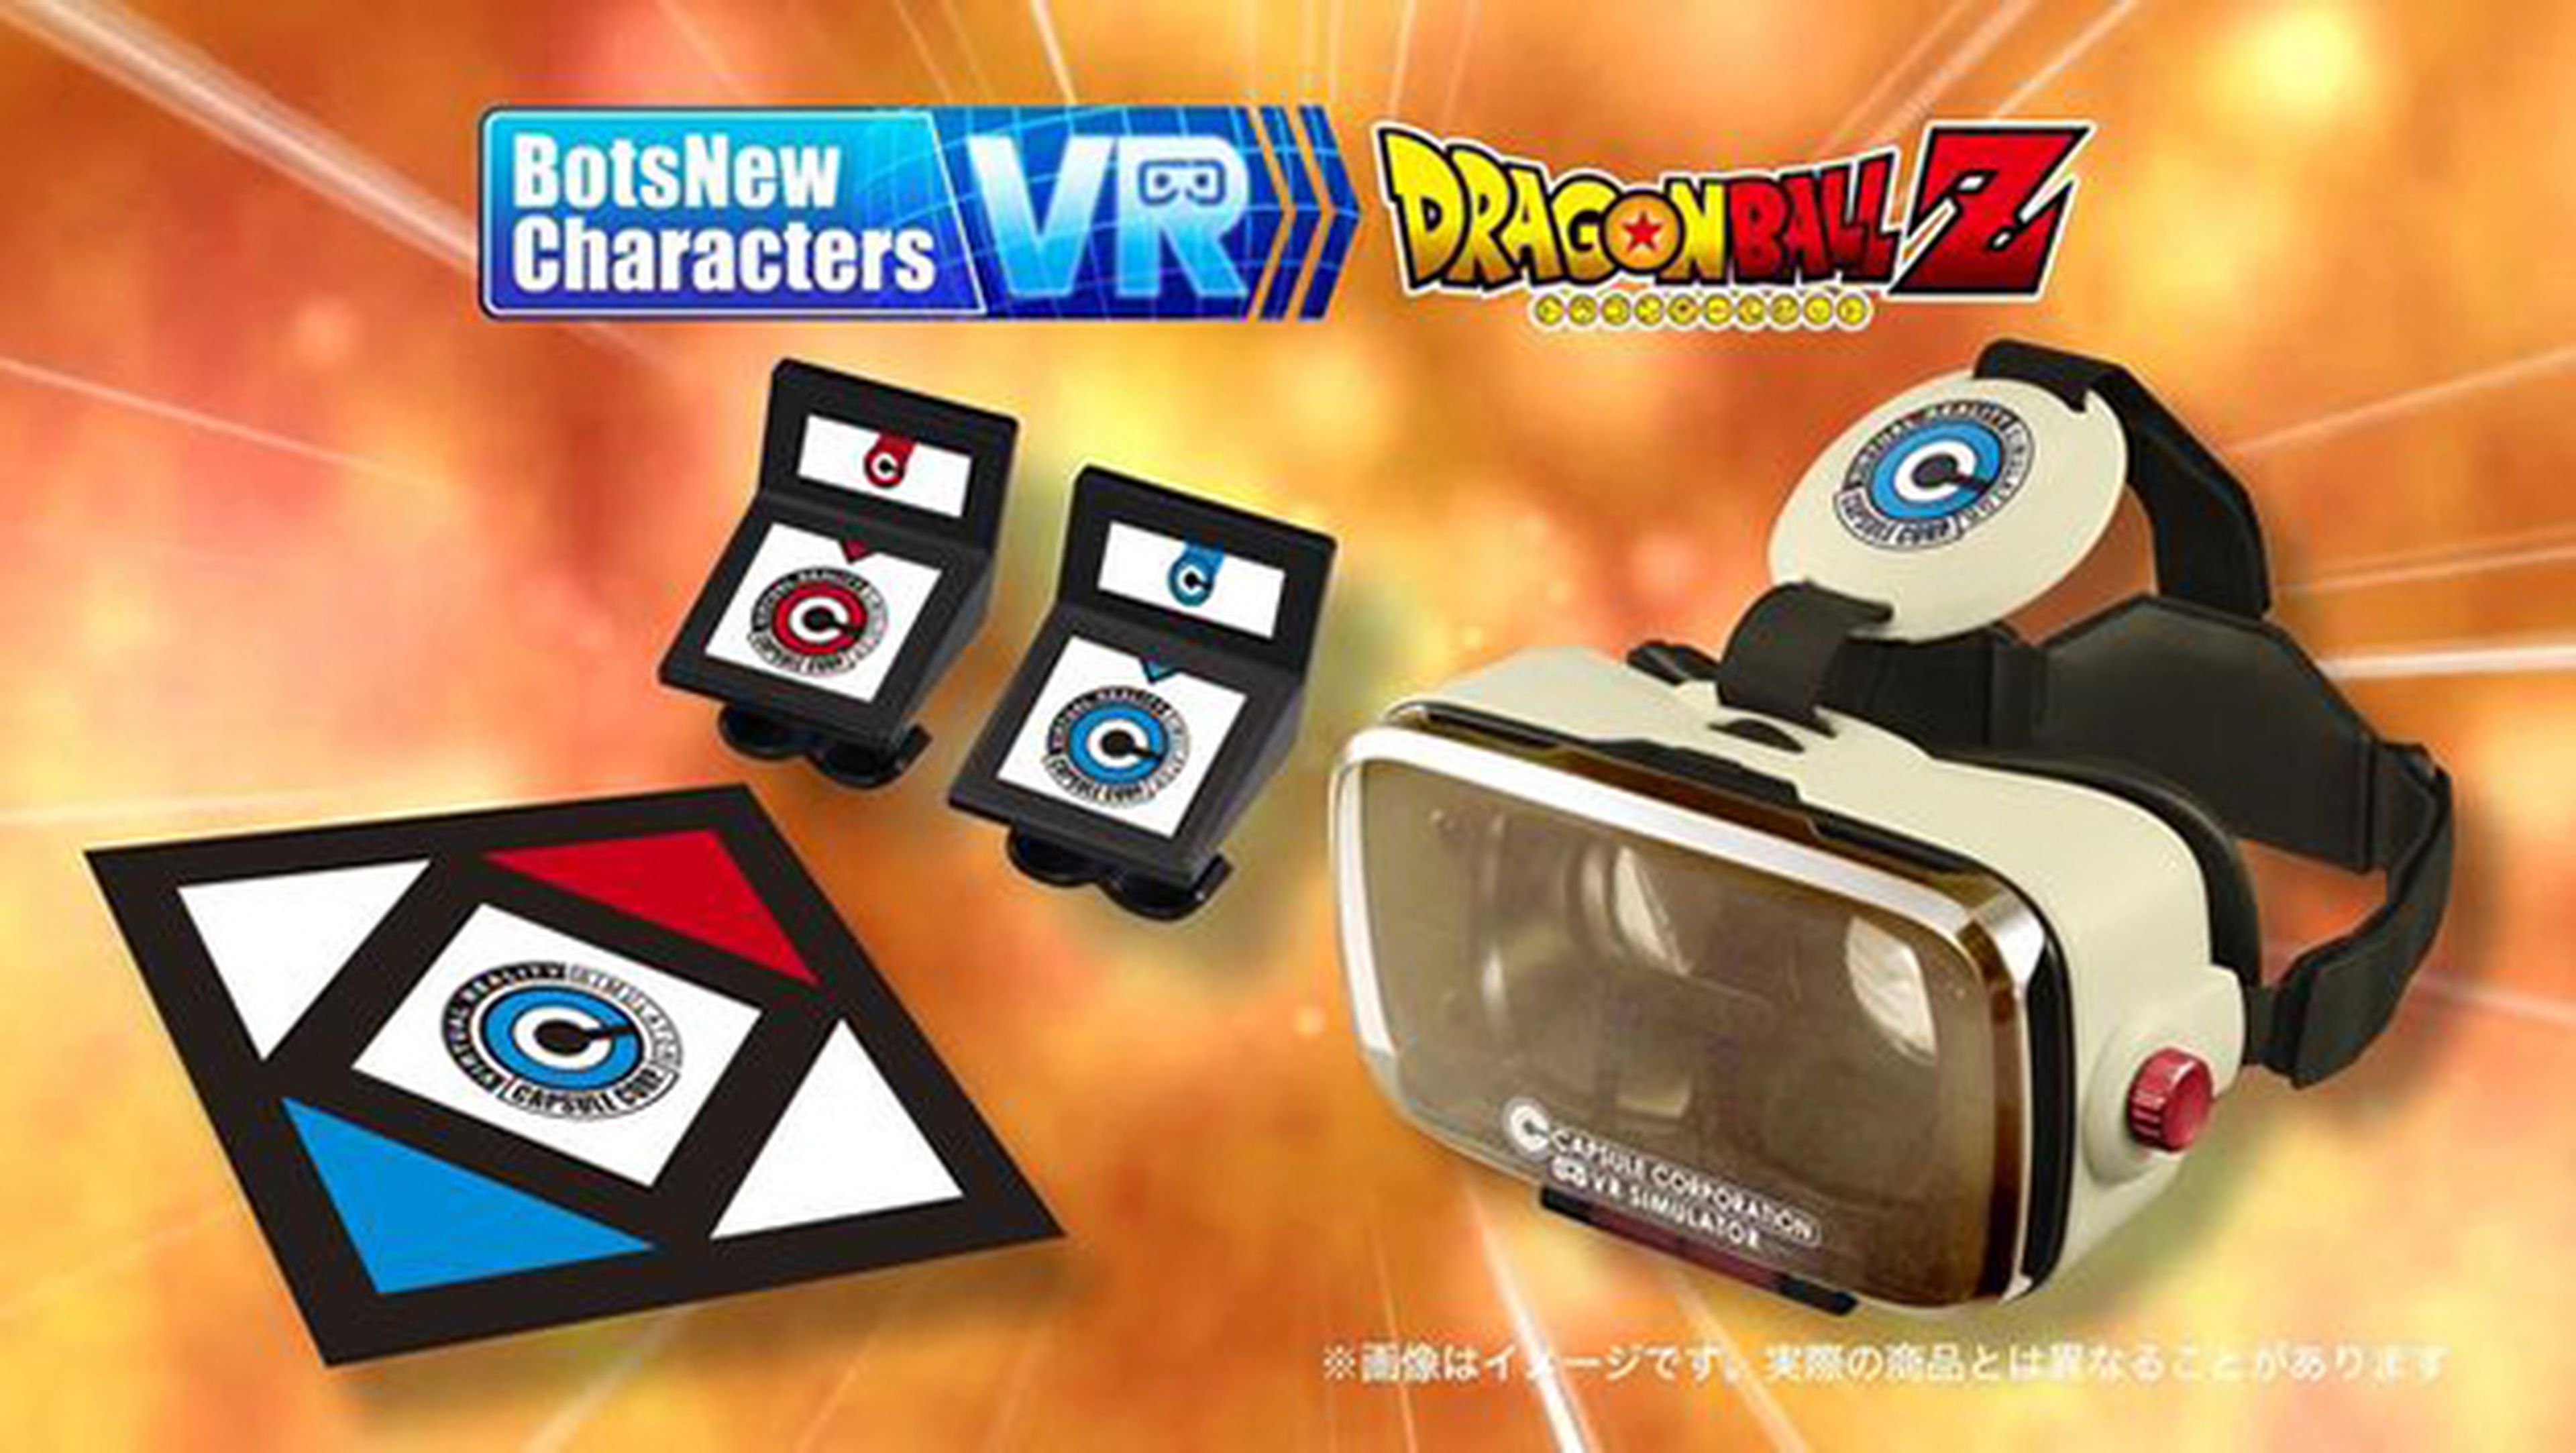 Dragon Ball Z VR, lanza ondas vitales en realidad virtual | Computer Hoy